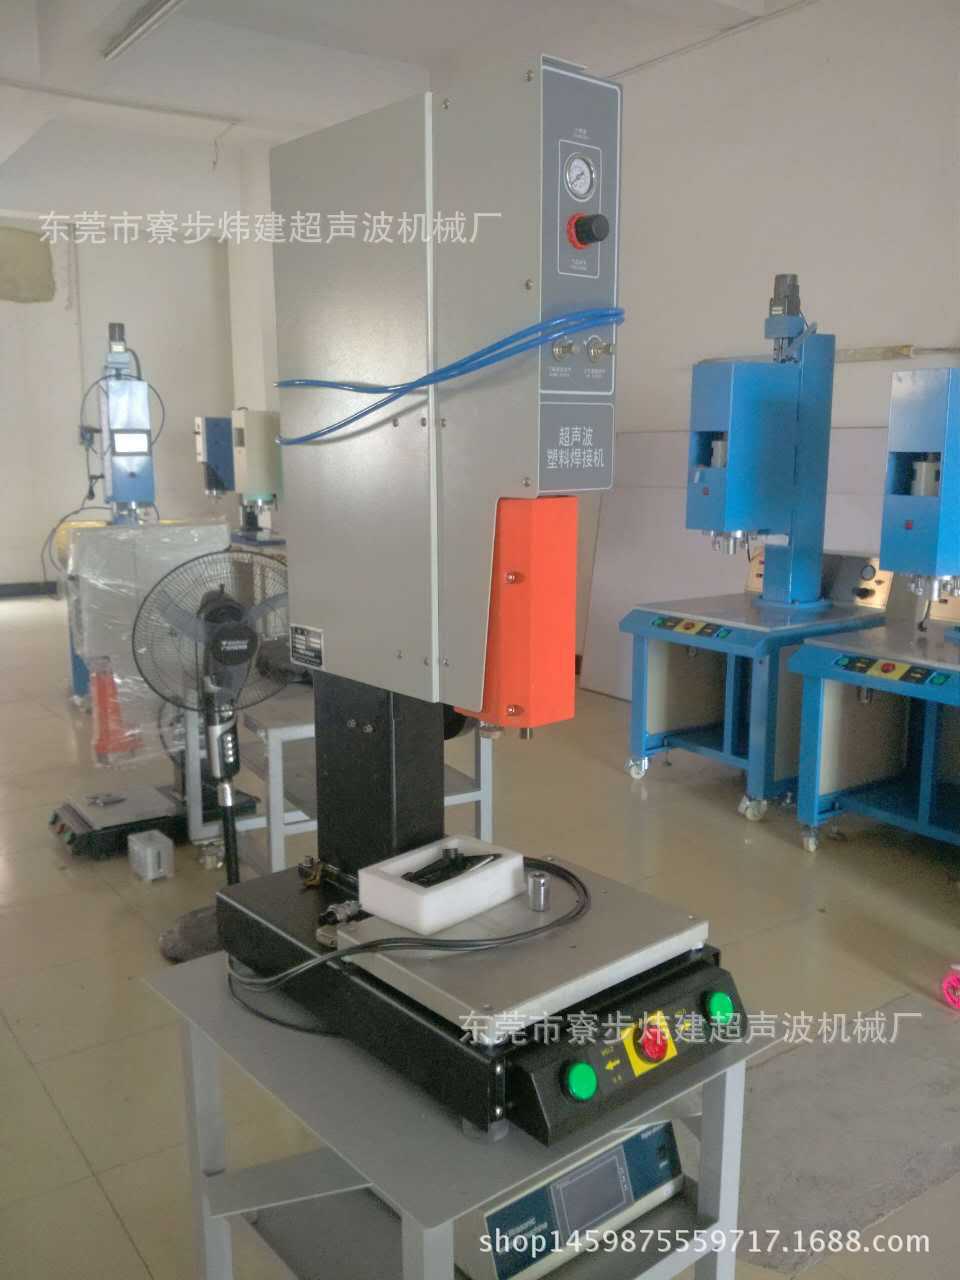 东莞炜建超音波熔接机械厂产销湖南超声波焊接设备、模具加工示例图9